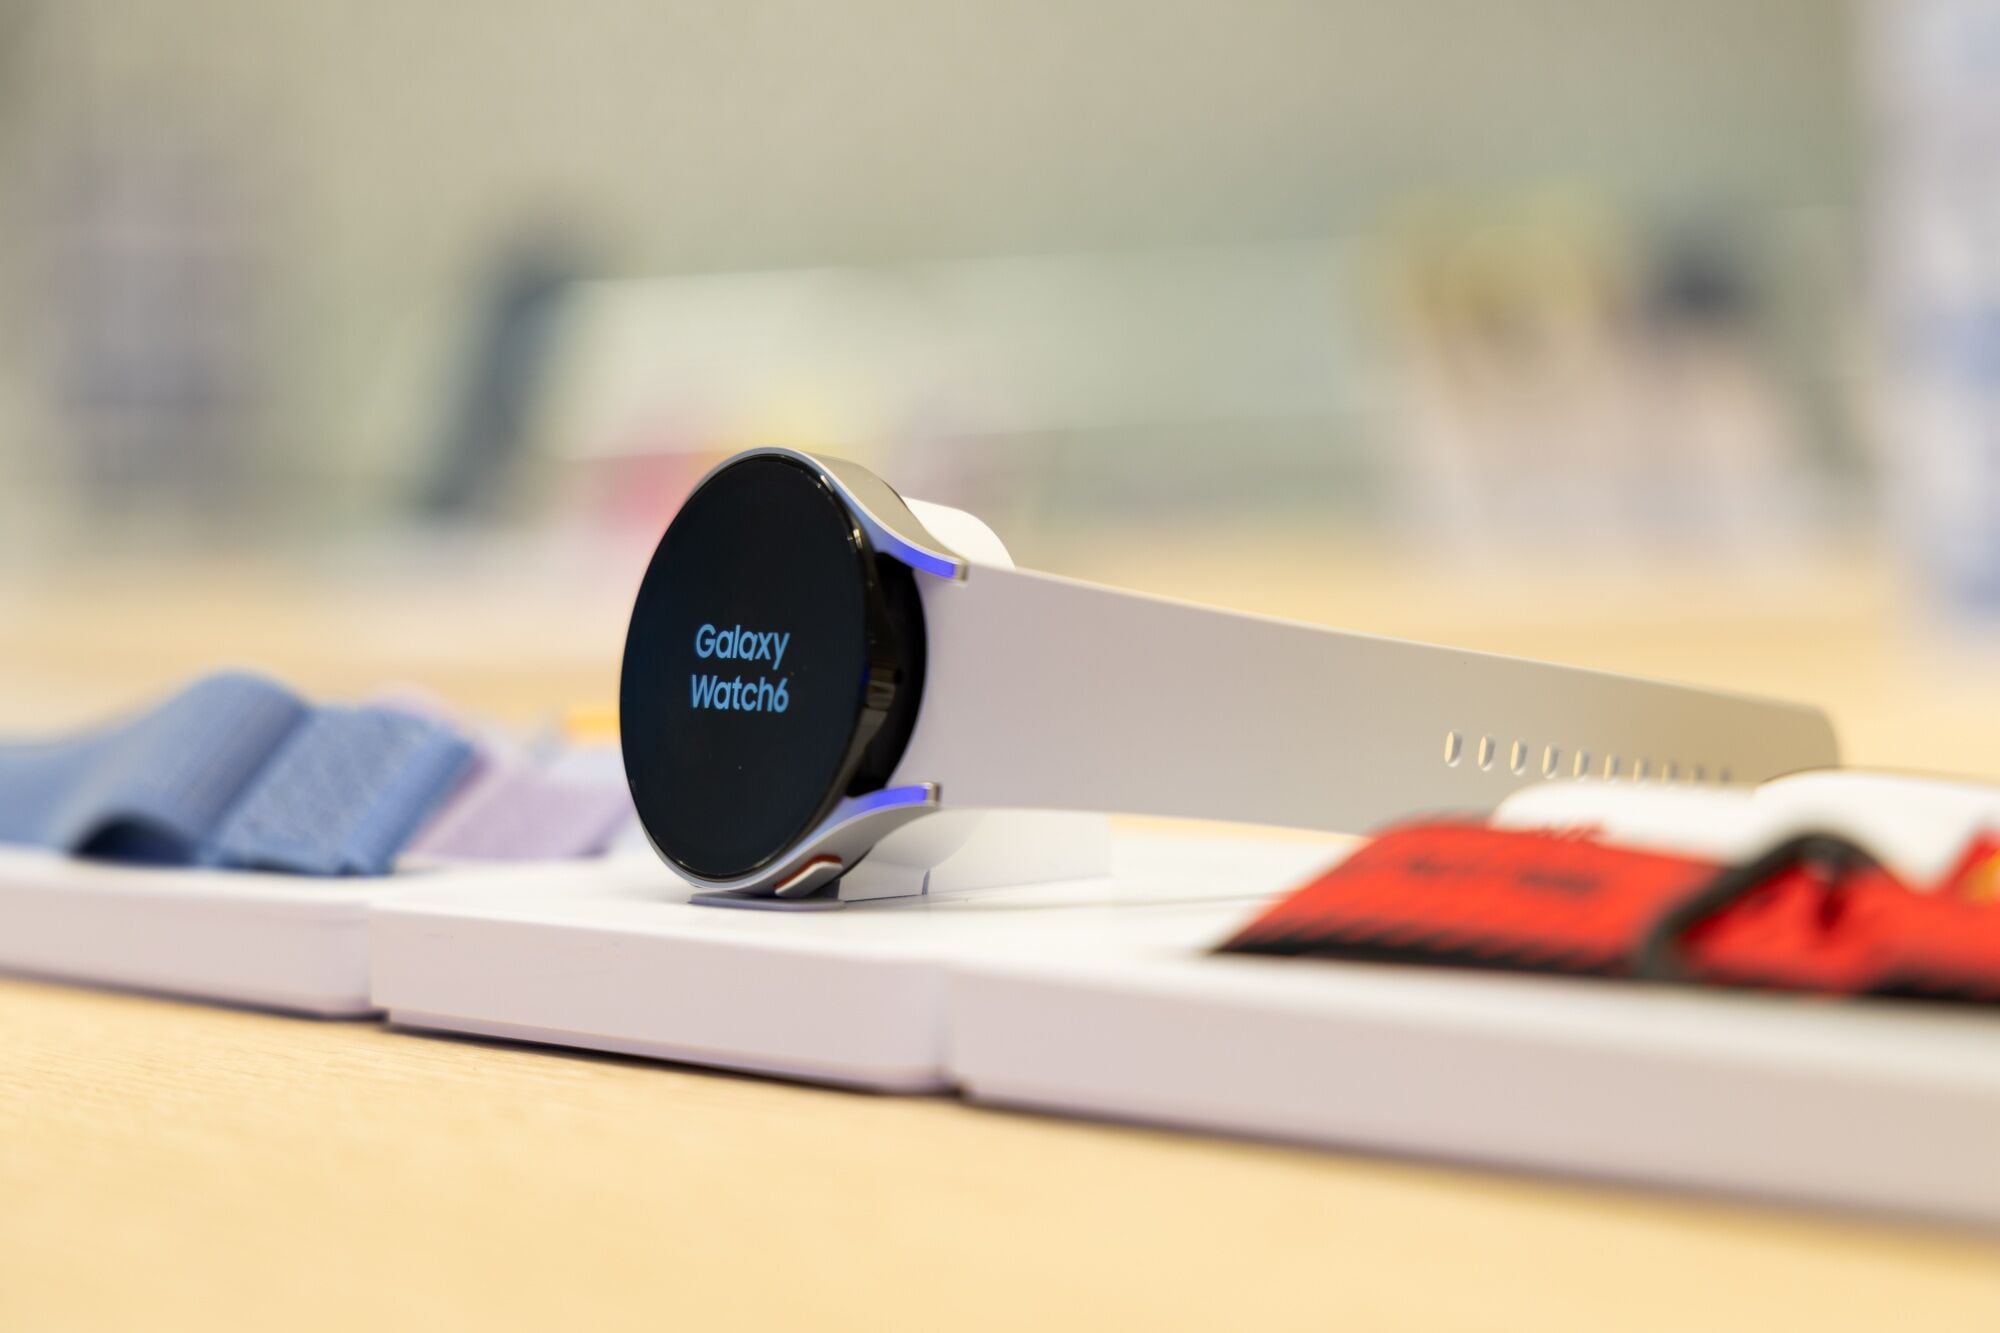 Samsung compite con Apple para desarrollar un monitor de glucosa que no sea  invasivo